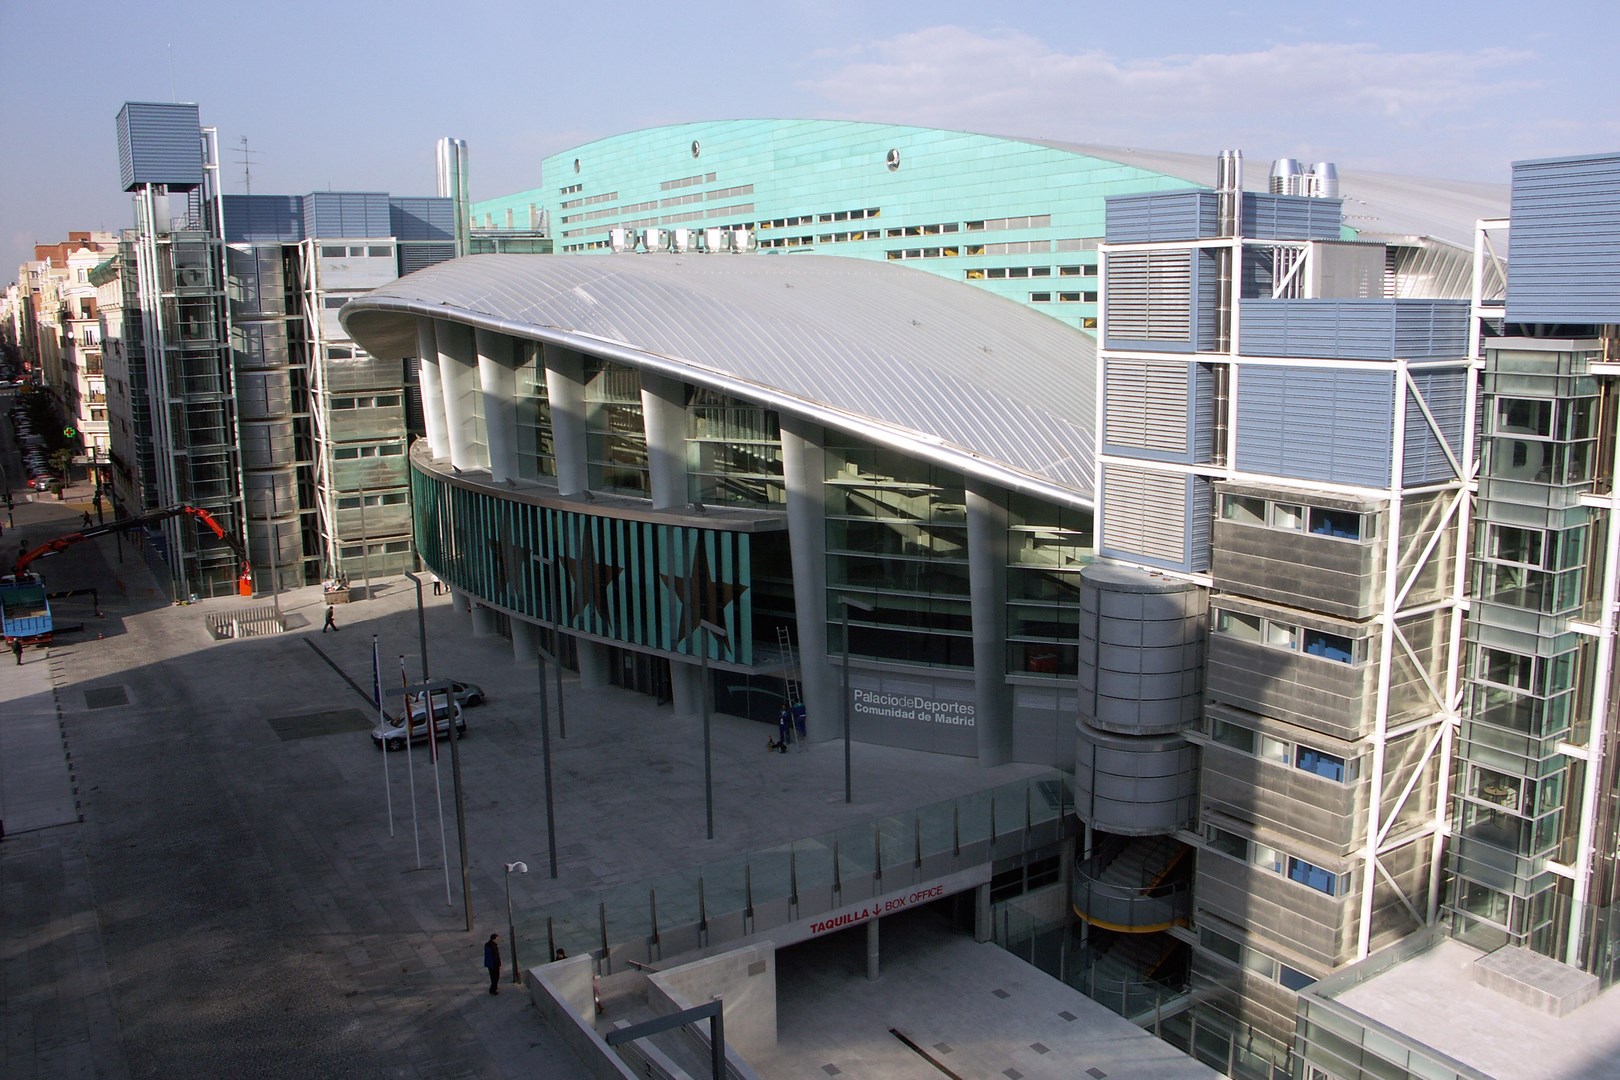 Palacio de Deportes in the Regional Community of Madrid